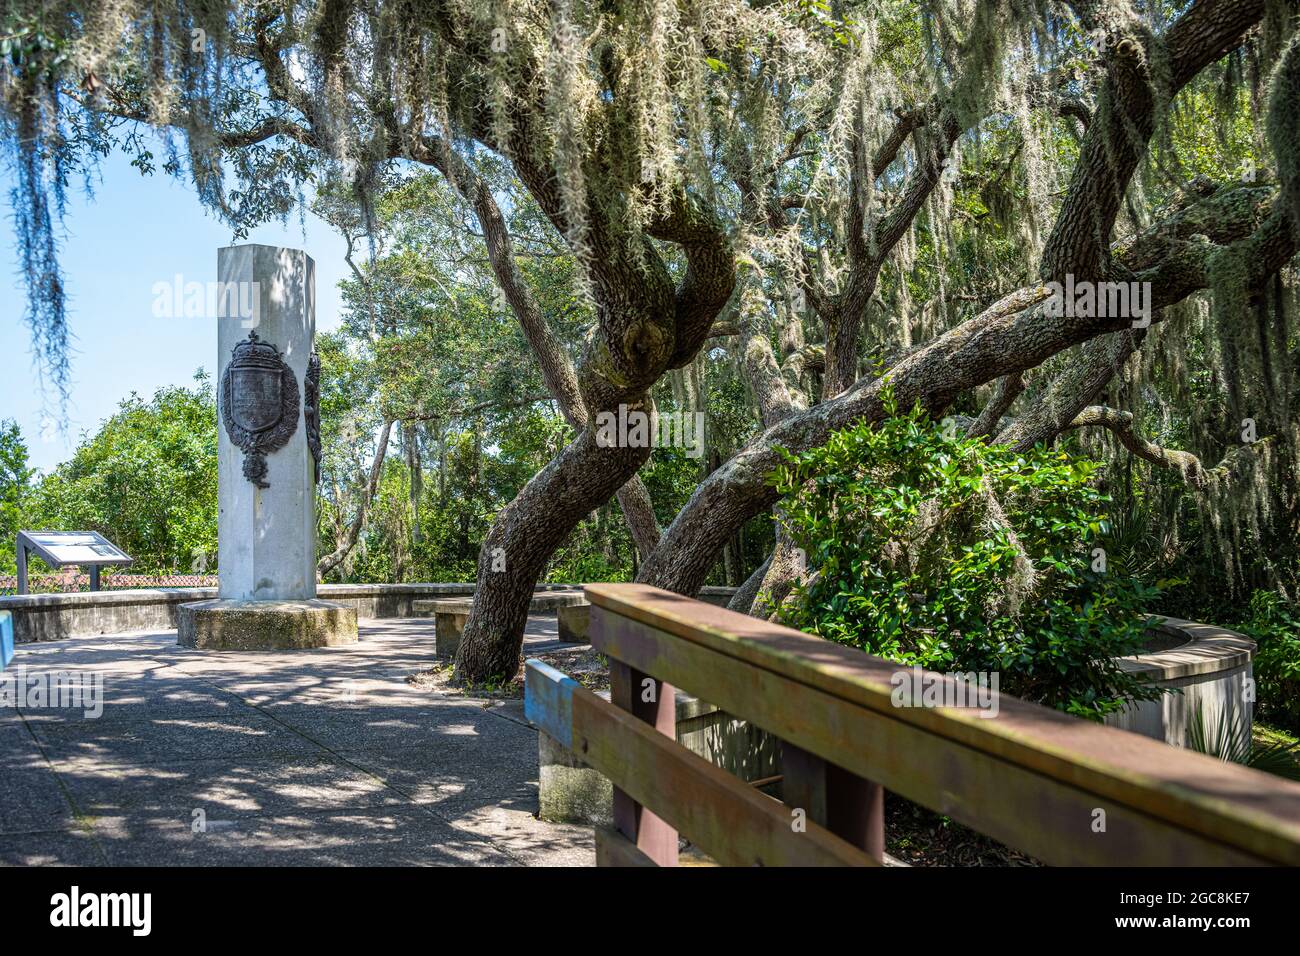 Le monument Ribault (colonne Ribault) commémore le débarquement de Jean Ribault en 1562, près de l'embouchure de la rivière St. Johns, dans l'actuel Jacksonville, en Floride. Banque D'Images